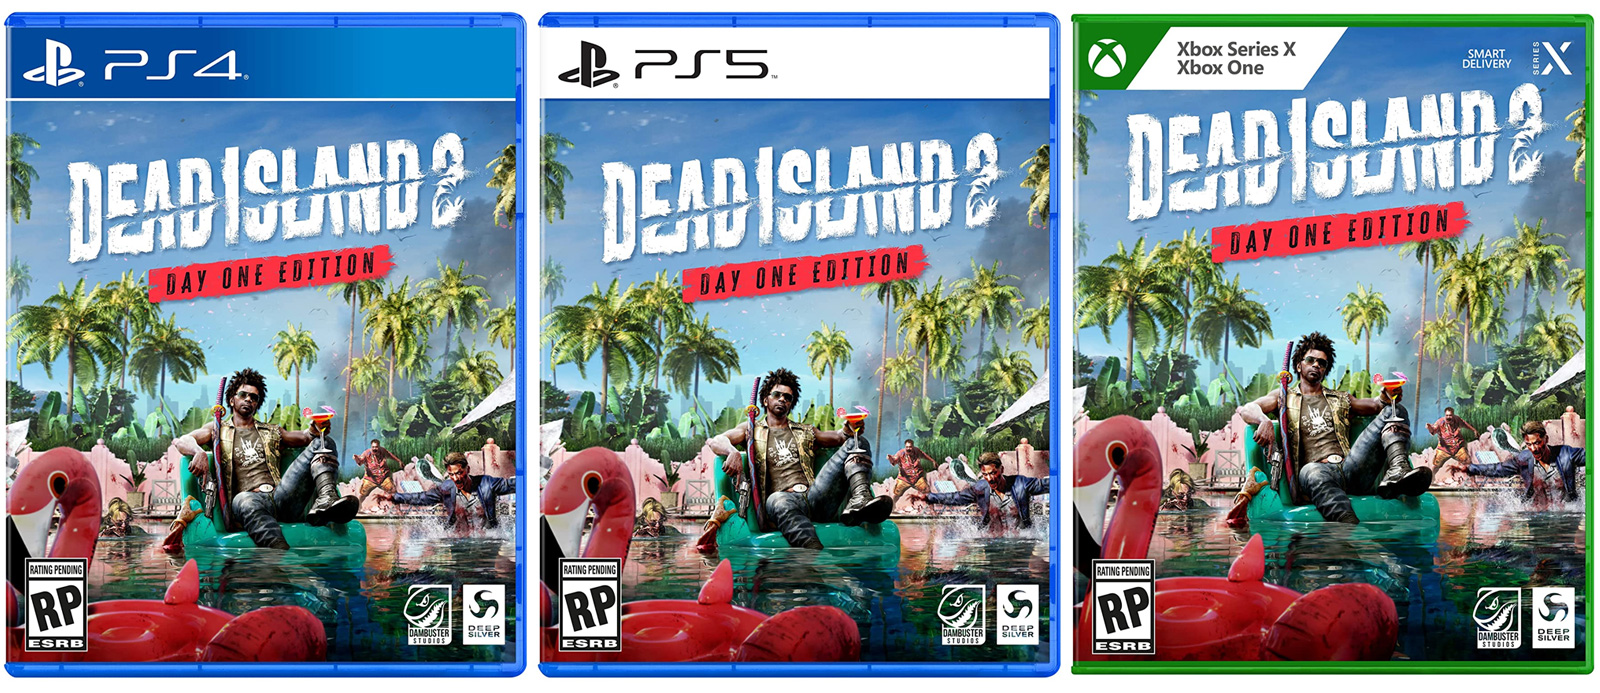 Dead Island 2 reaparece en  - AnaitGames